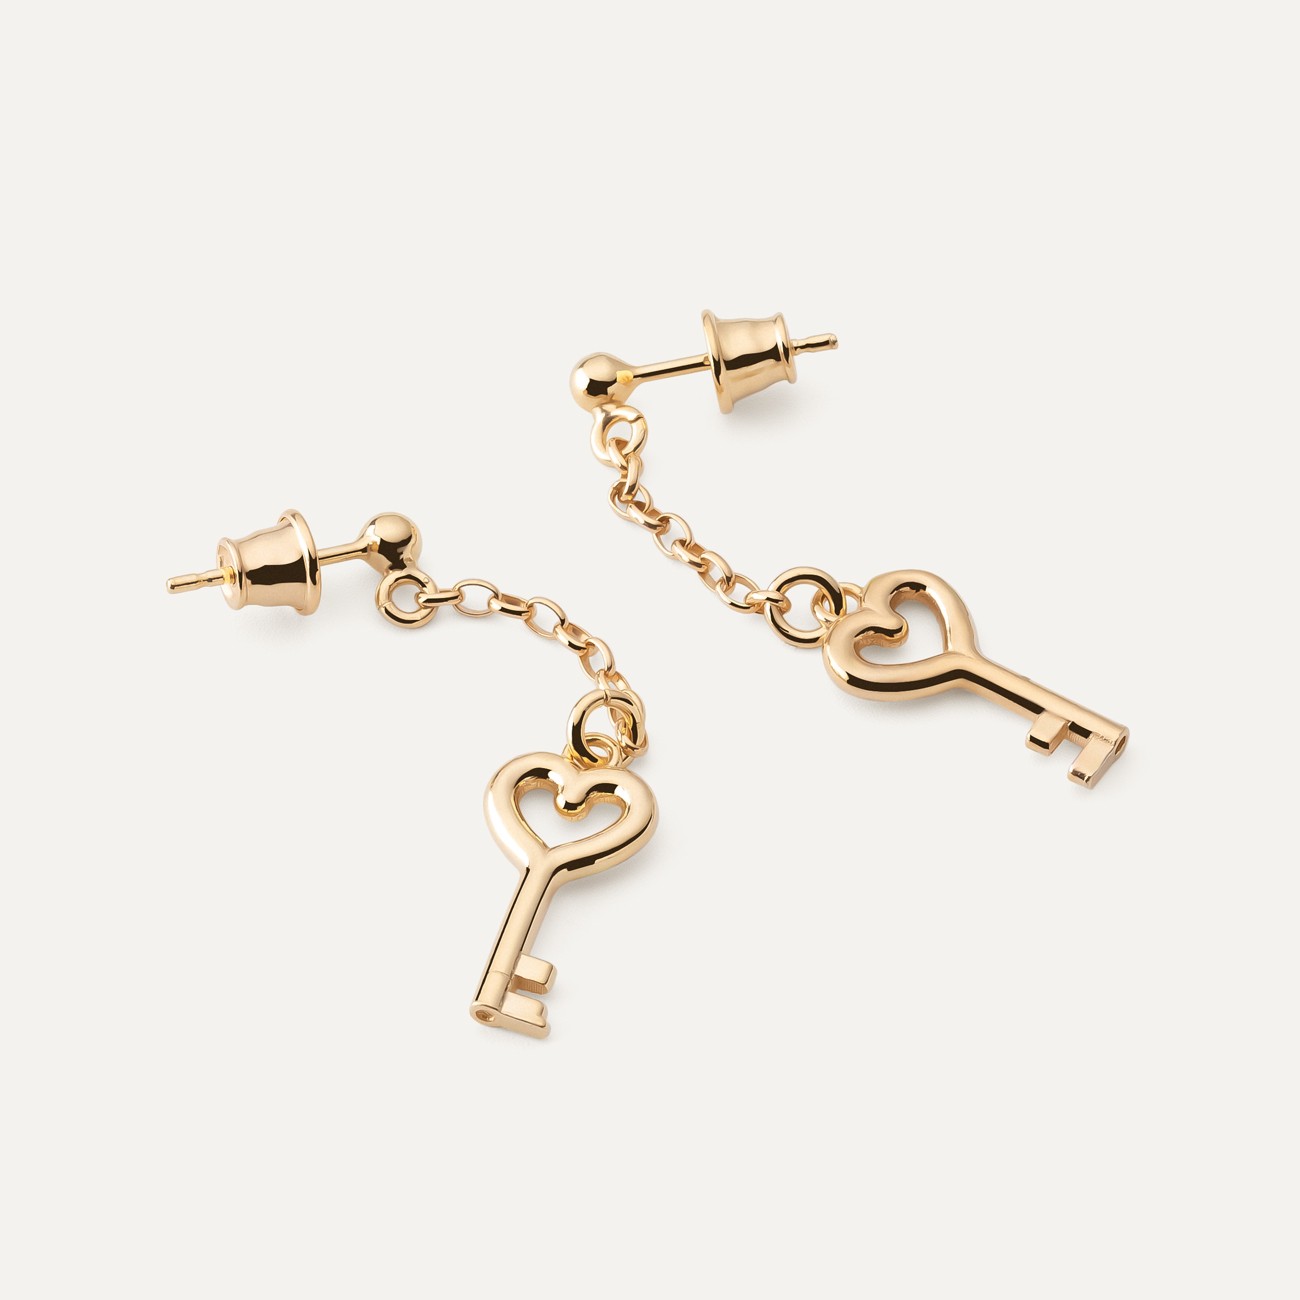 Key earrings, sterling silver 925